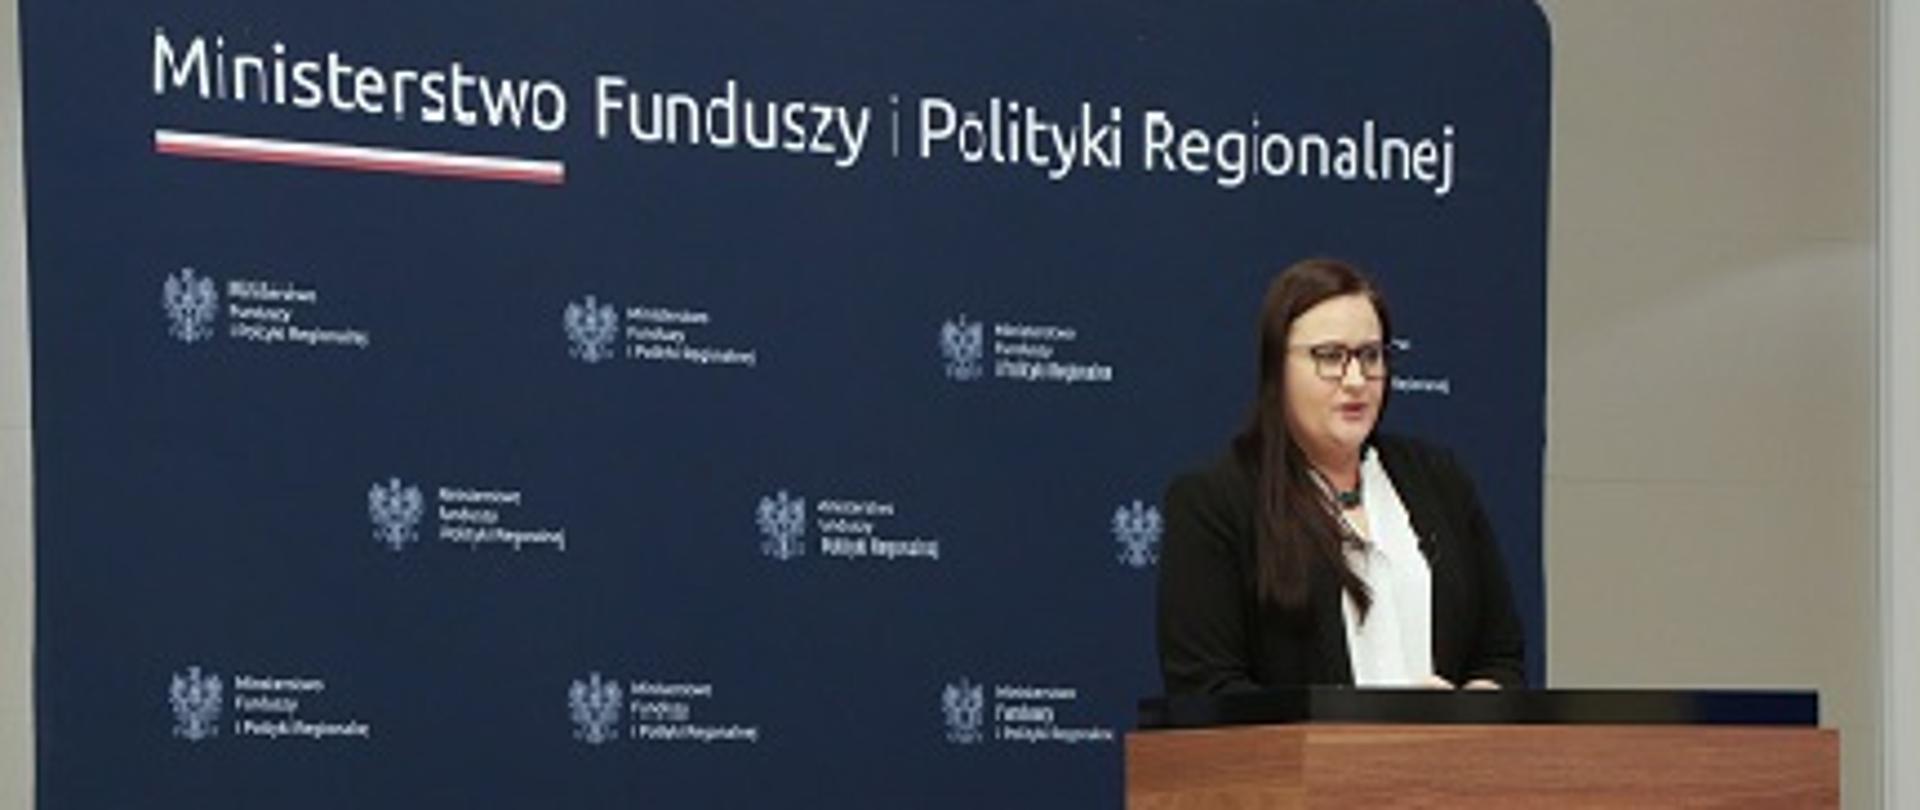 Minister Małgorzata Jarosińska-Jedynak przy mównicy, w tle ścianka z logo i nazwą Ministerstwa Funduszy i Polityki Regionalnej